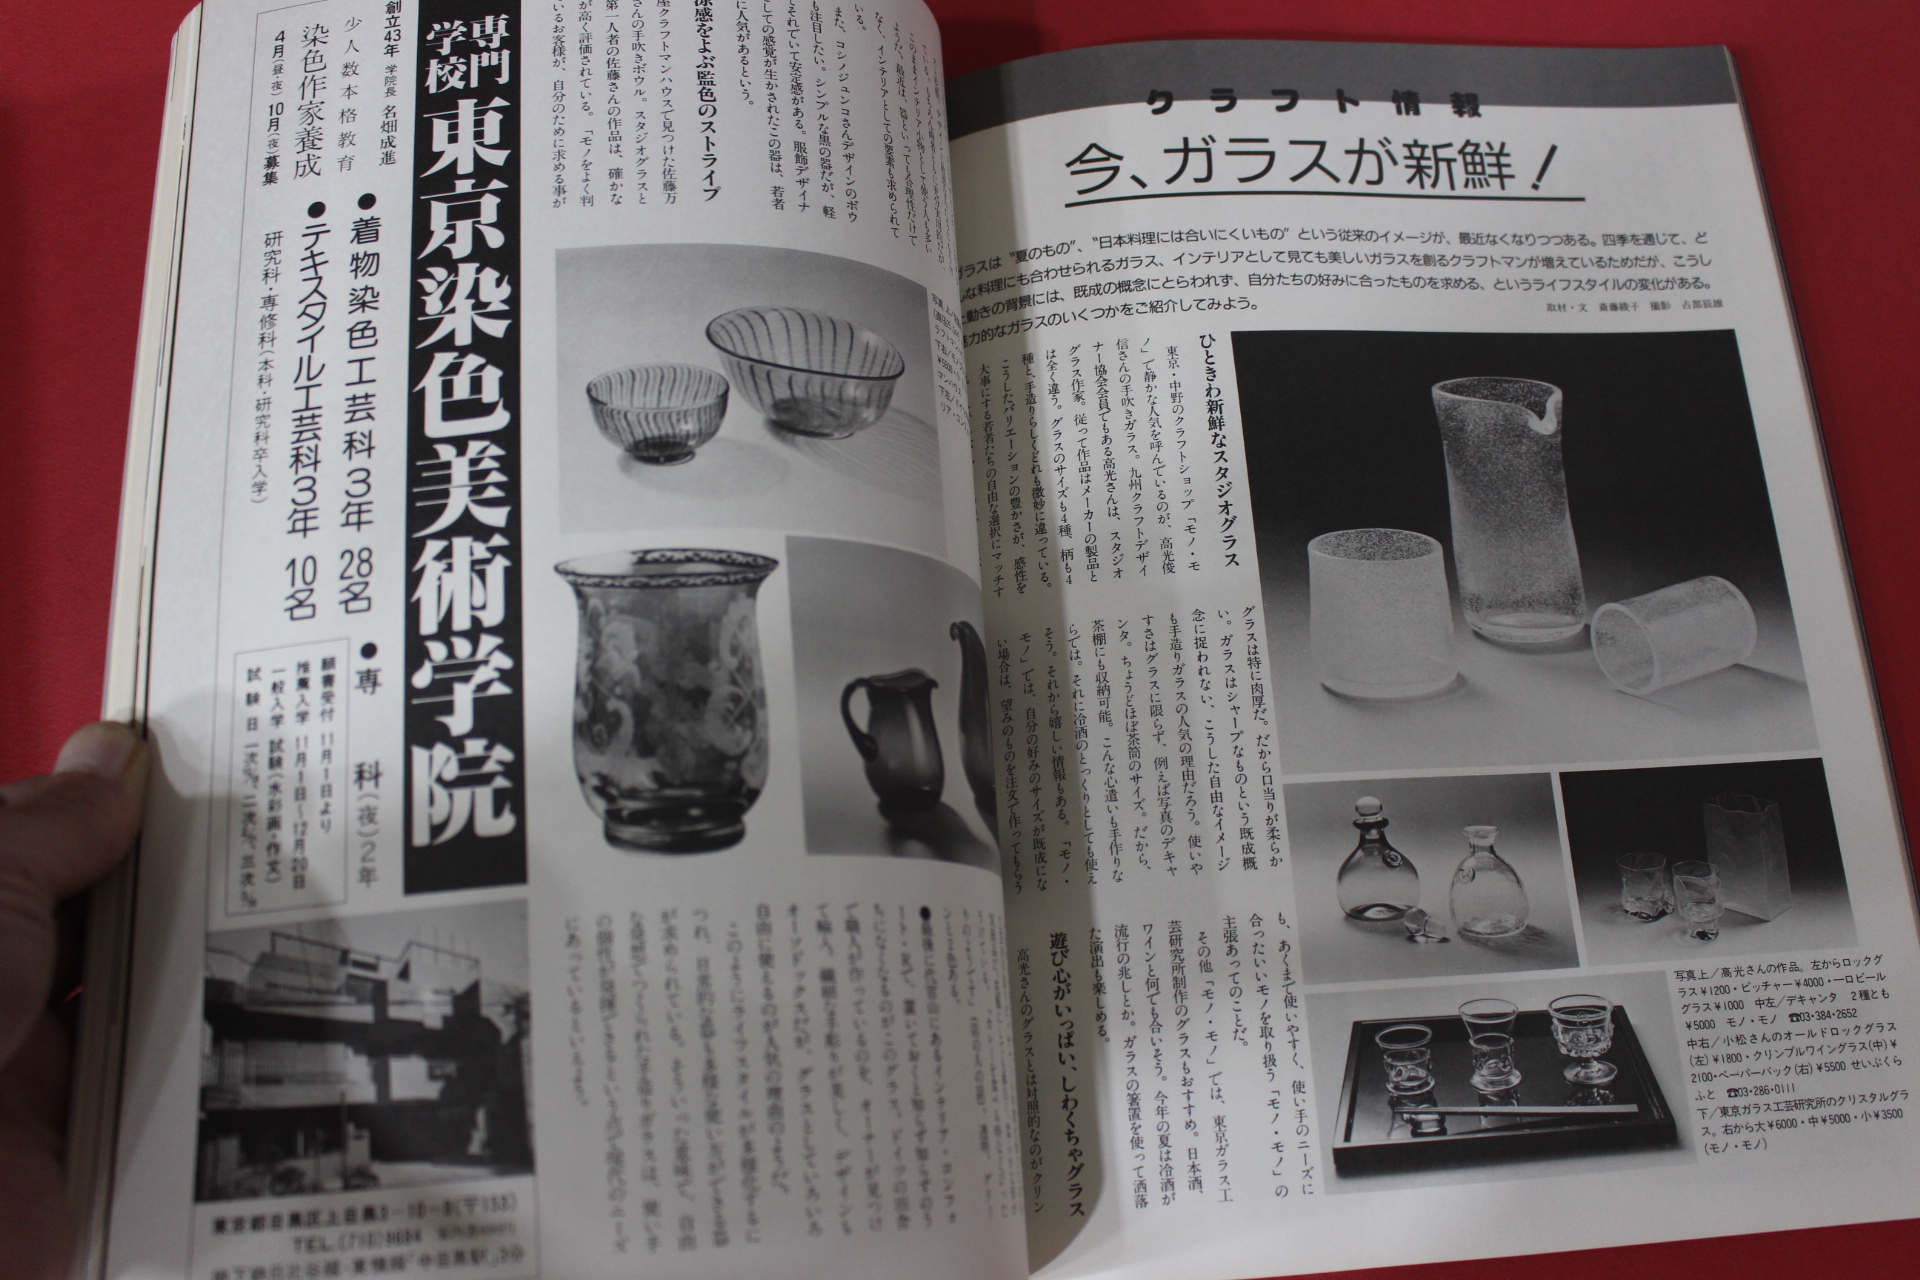 1986년(소화61년) 일본잡지